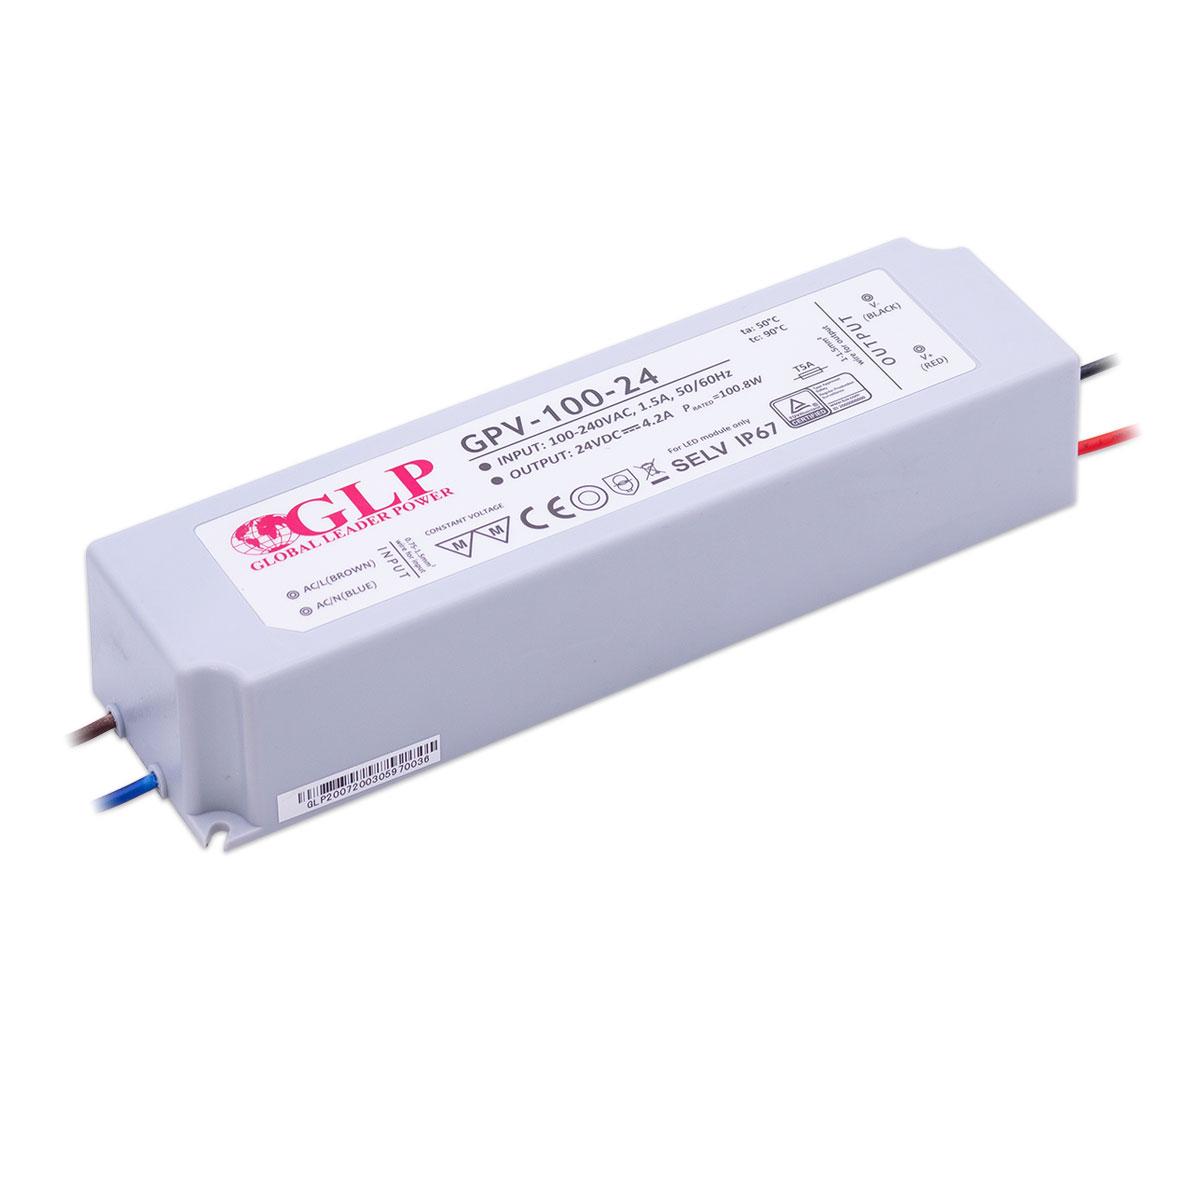 GLP GPV-100-24 LED Netzteil 100W 24V 4.2A IP67 Schaltnetzteil CV